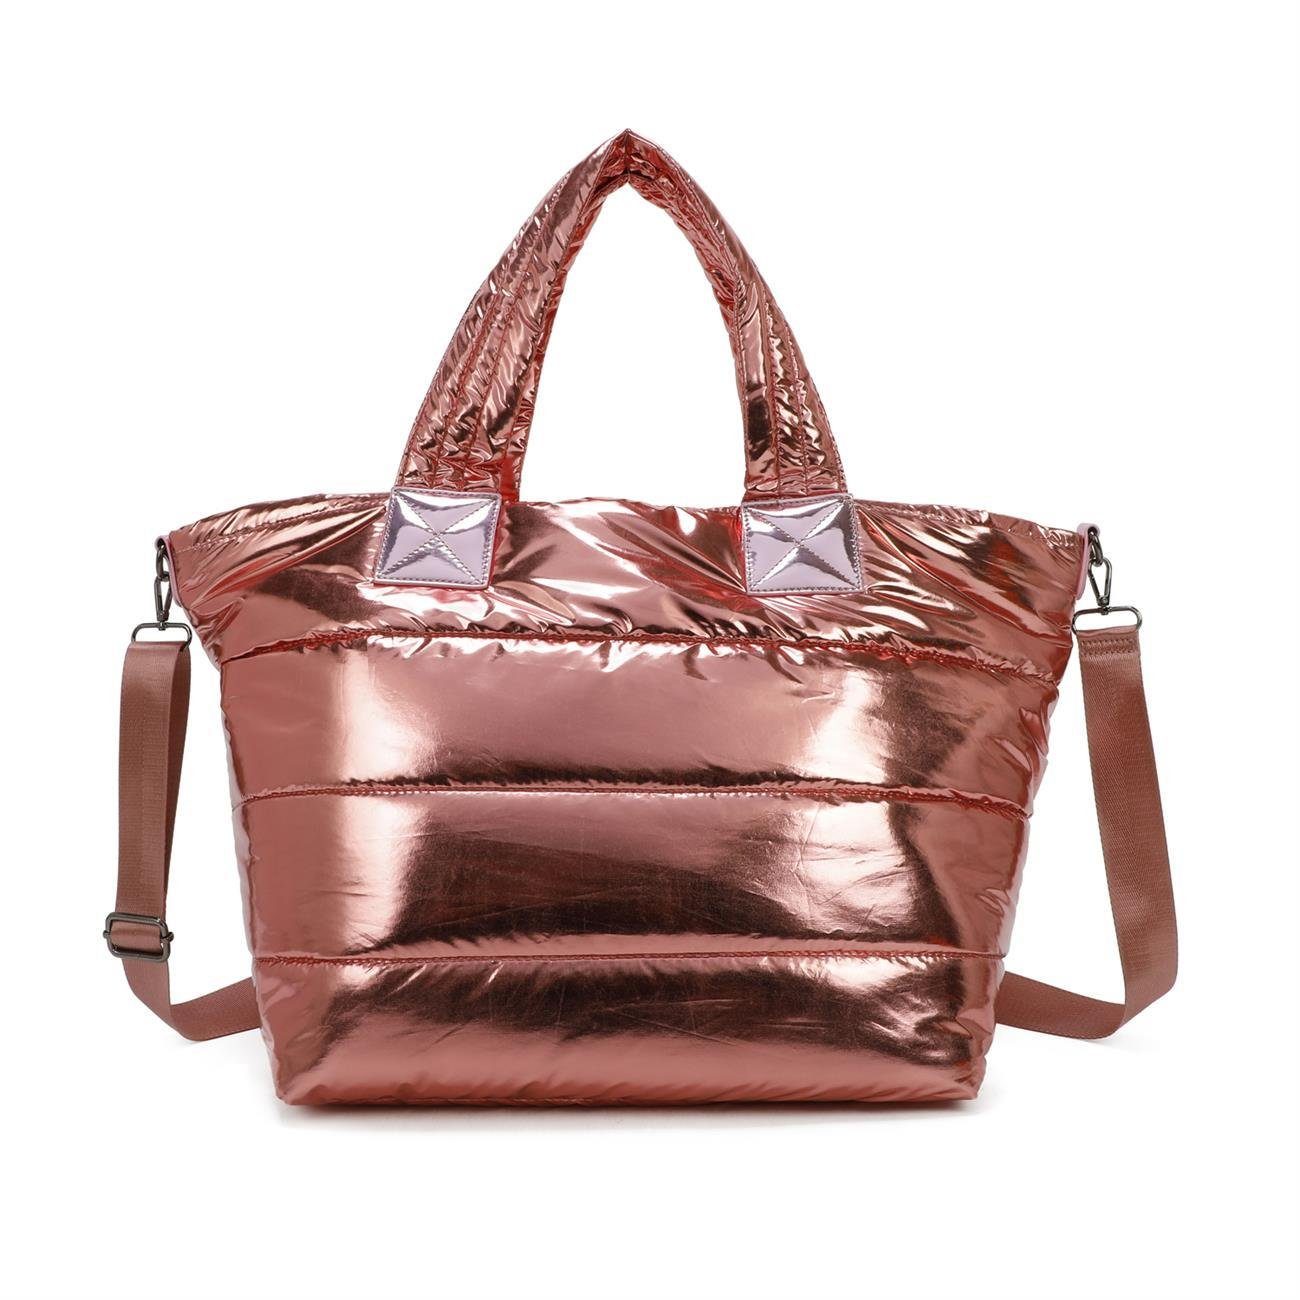 ITALYSHOP24 Schultertasche XL Damen Nylontasche Shopper Strandtasche  glänzend, als Handtasche, Umhängetasche, Reisetasche, Weekender